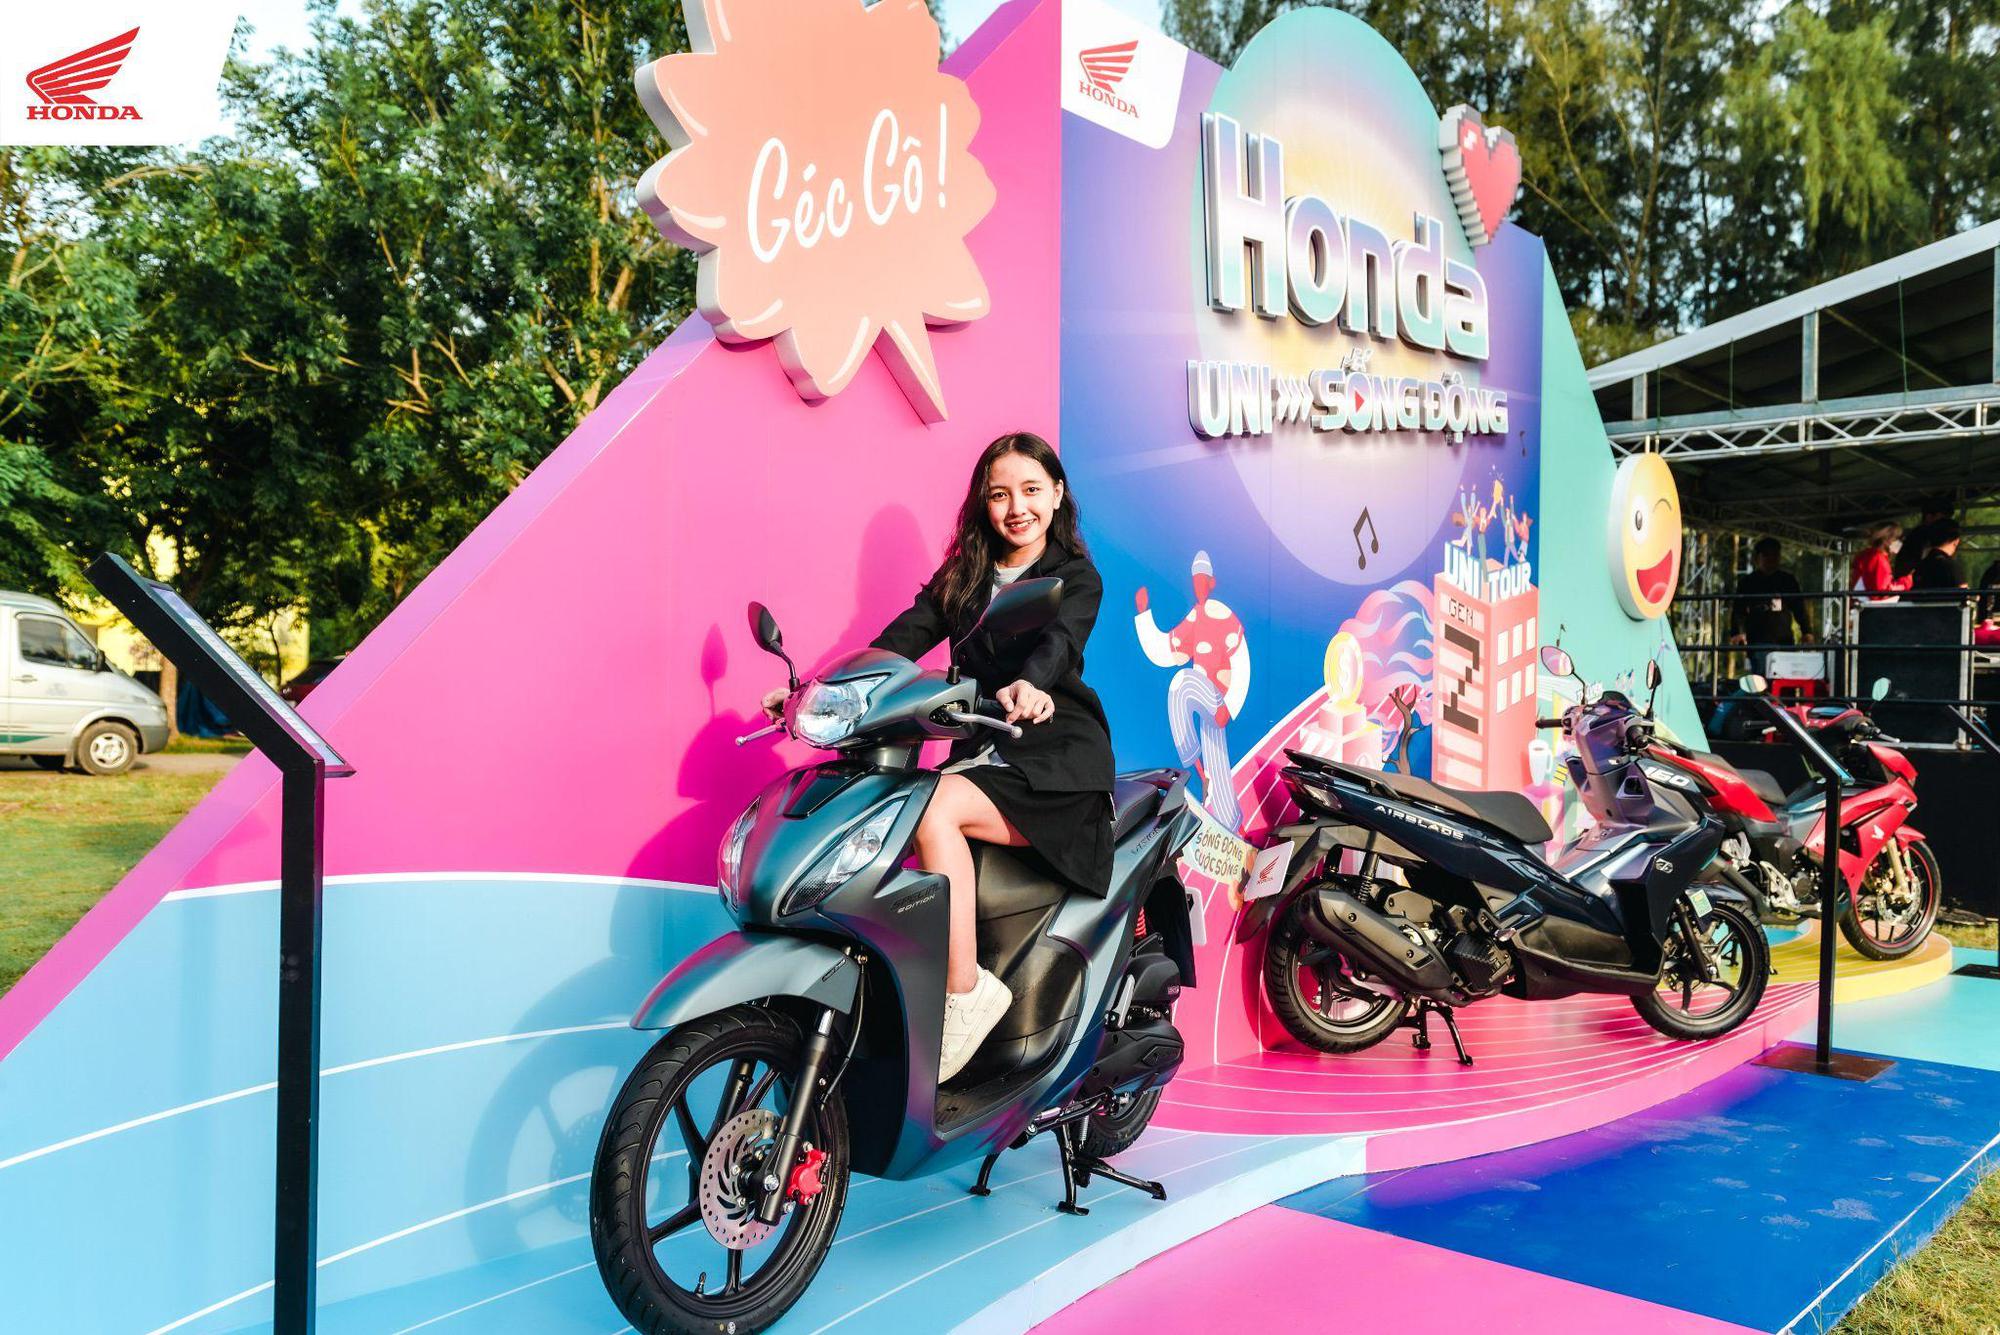 Honda Việt Nam chính thức khởi hành tour “Honda UNI-Sống Động” - chuỗi sự kiện đa sắc màu, độc bản dành cho sinh viên - Ảnh 5.